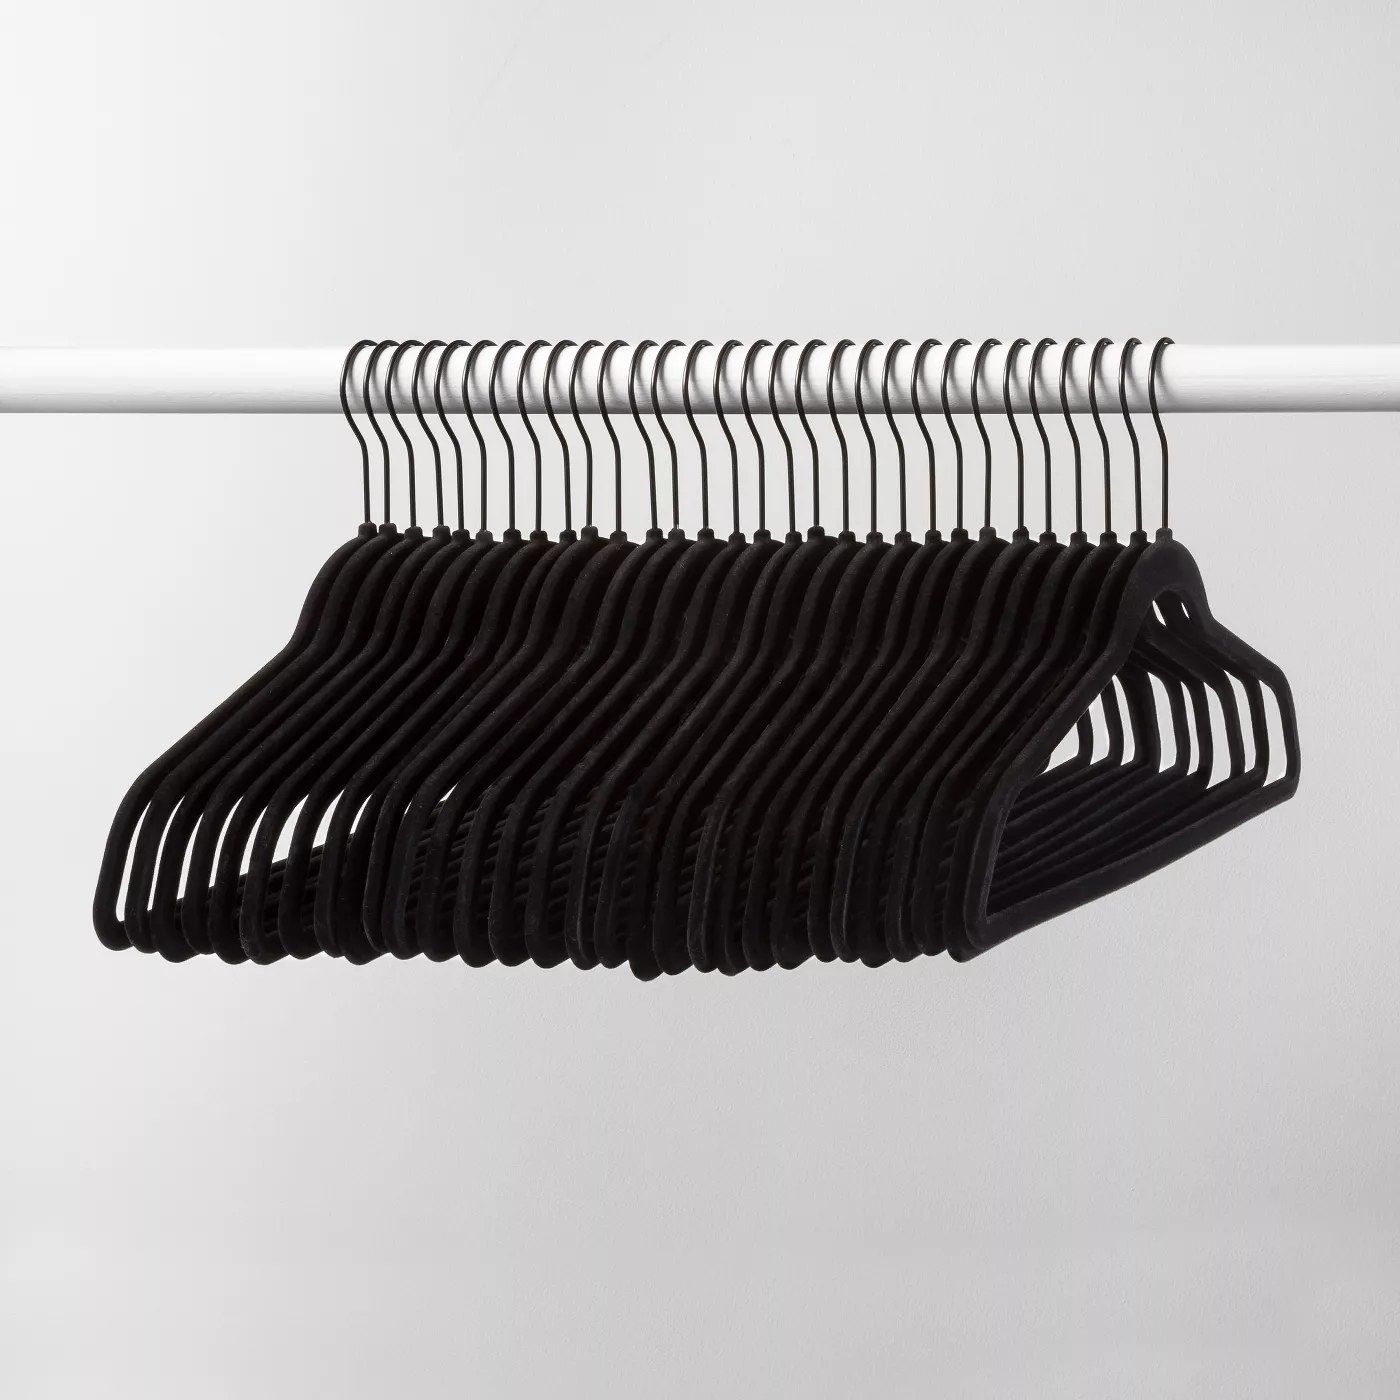 The black felt hangers